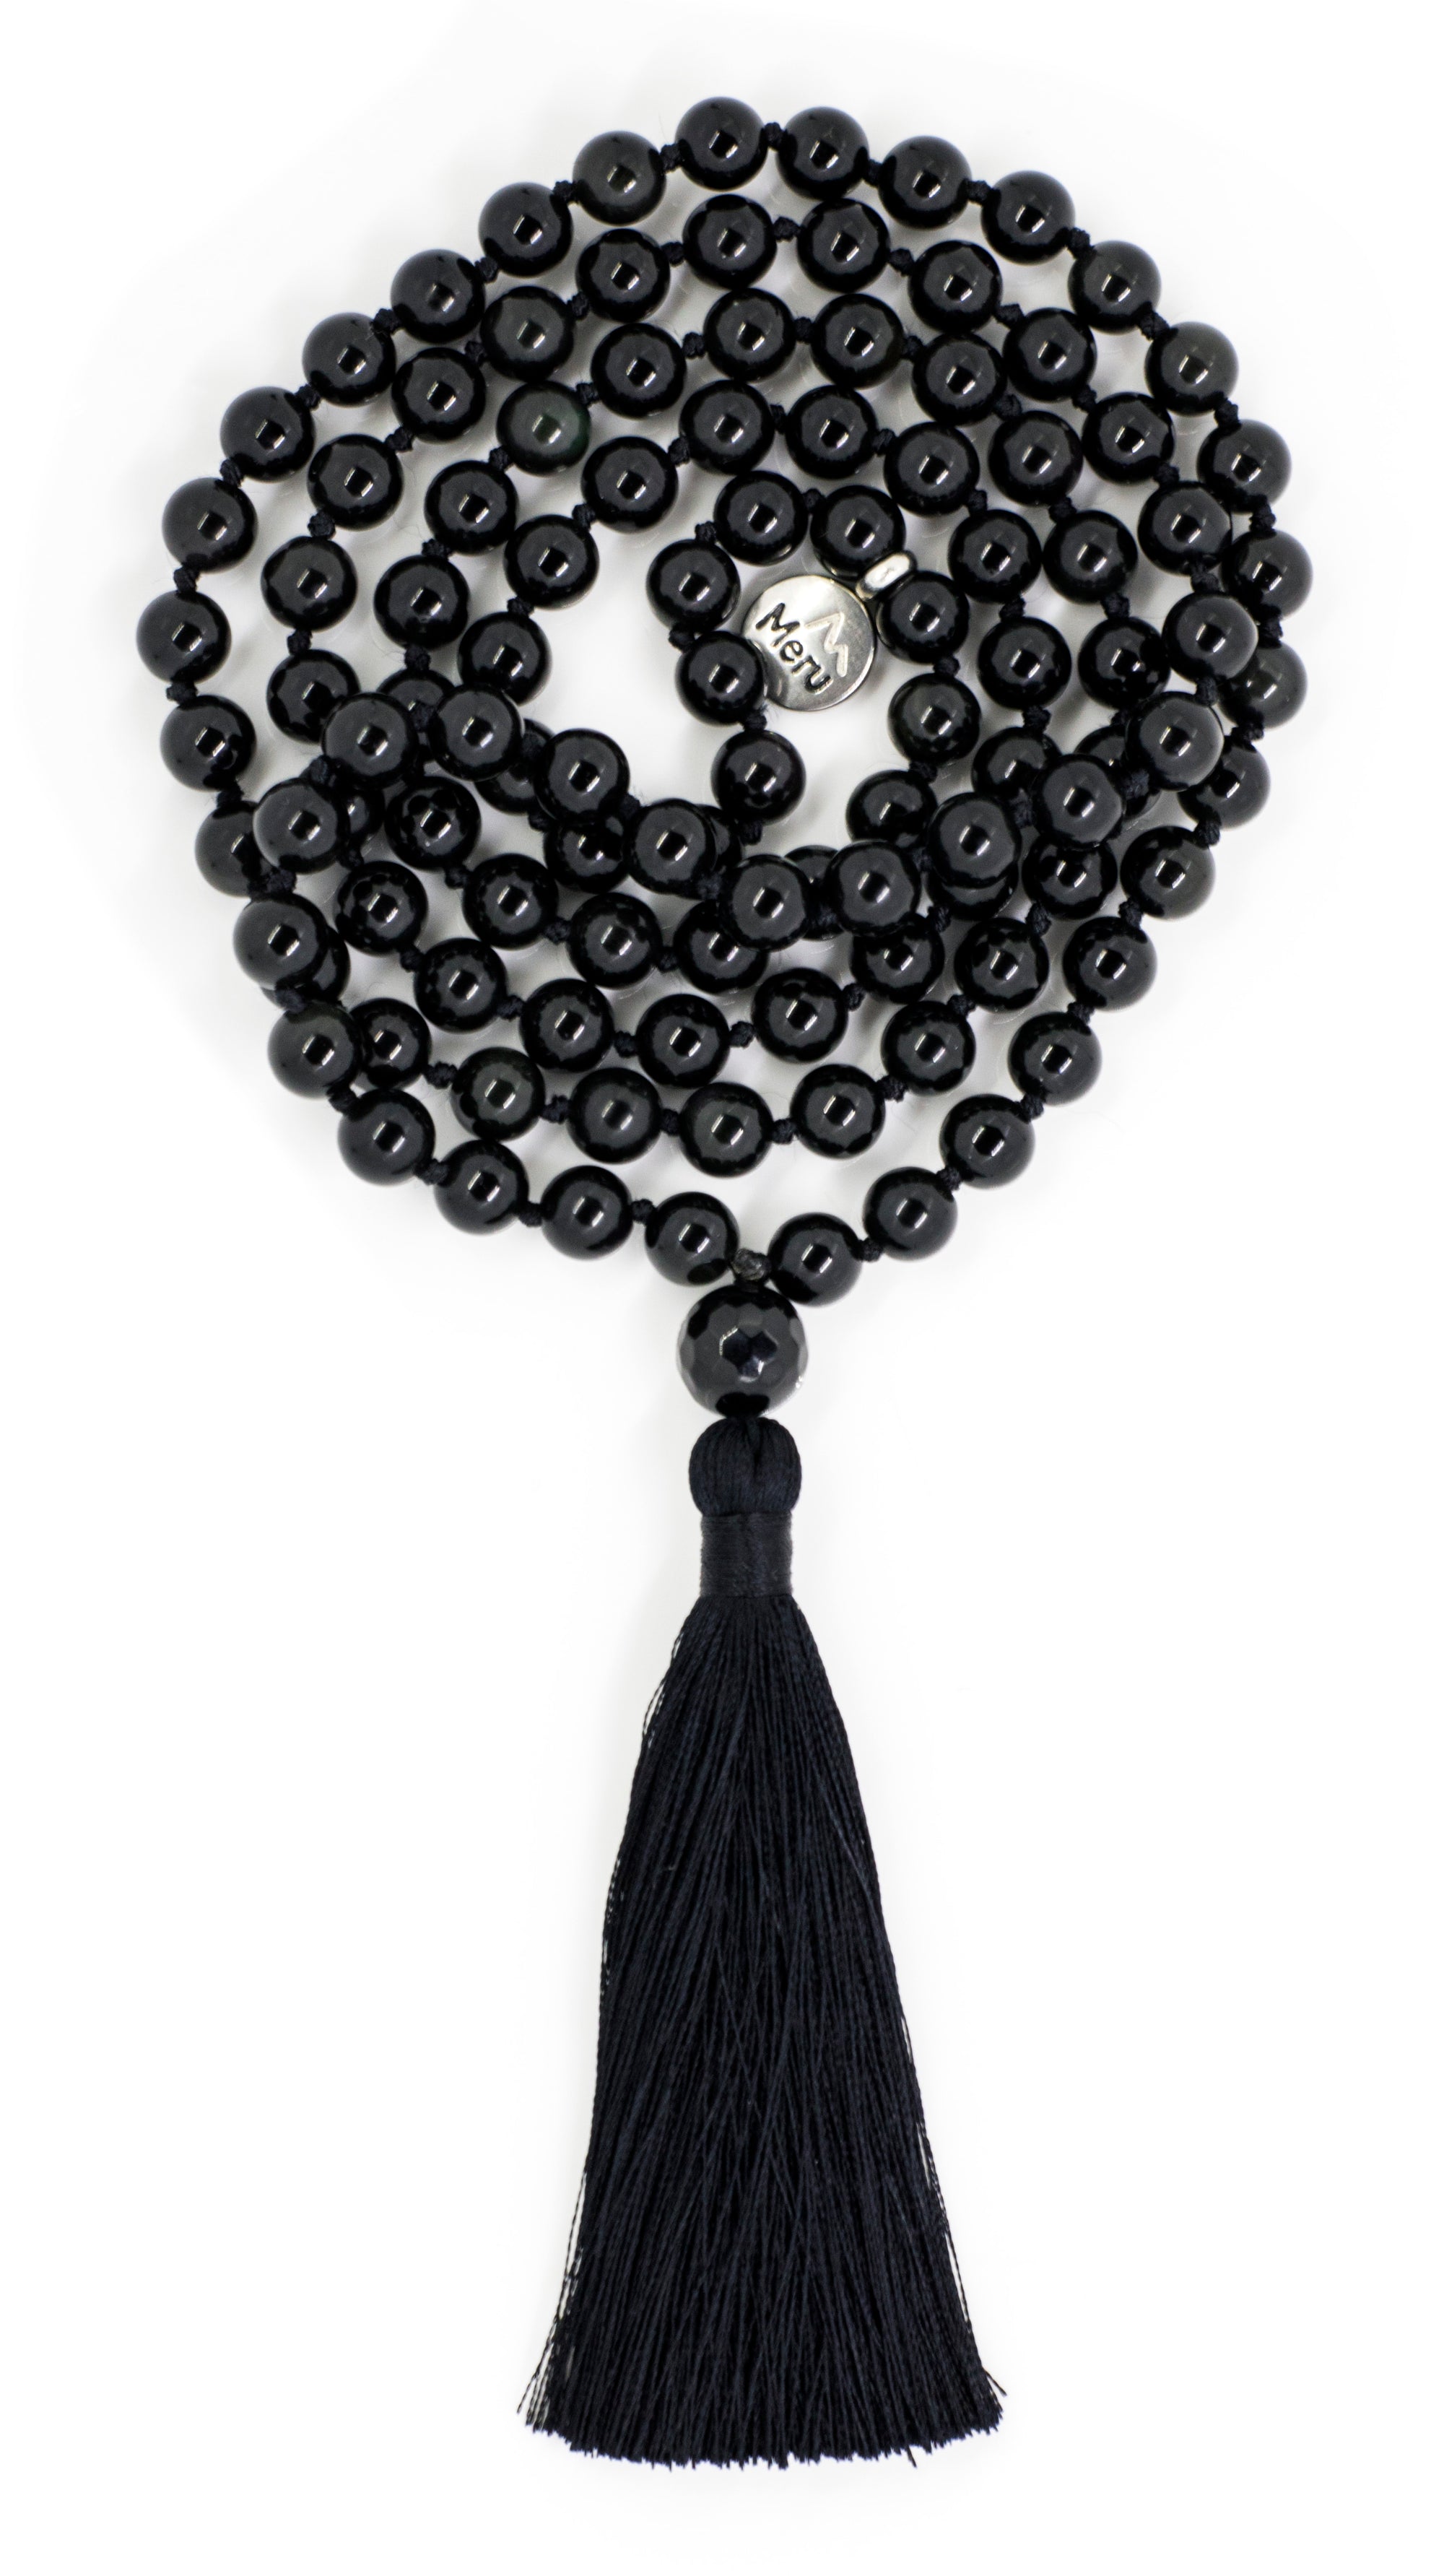 Buy 32 Obsidian Bead, Obsidian Chip Bead Strand, Obsidian Bead Necklace, Beaded  Obsidian Online in India - Etsy